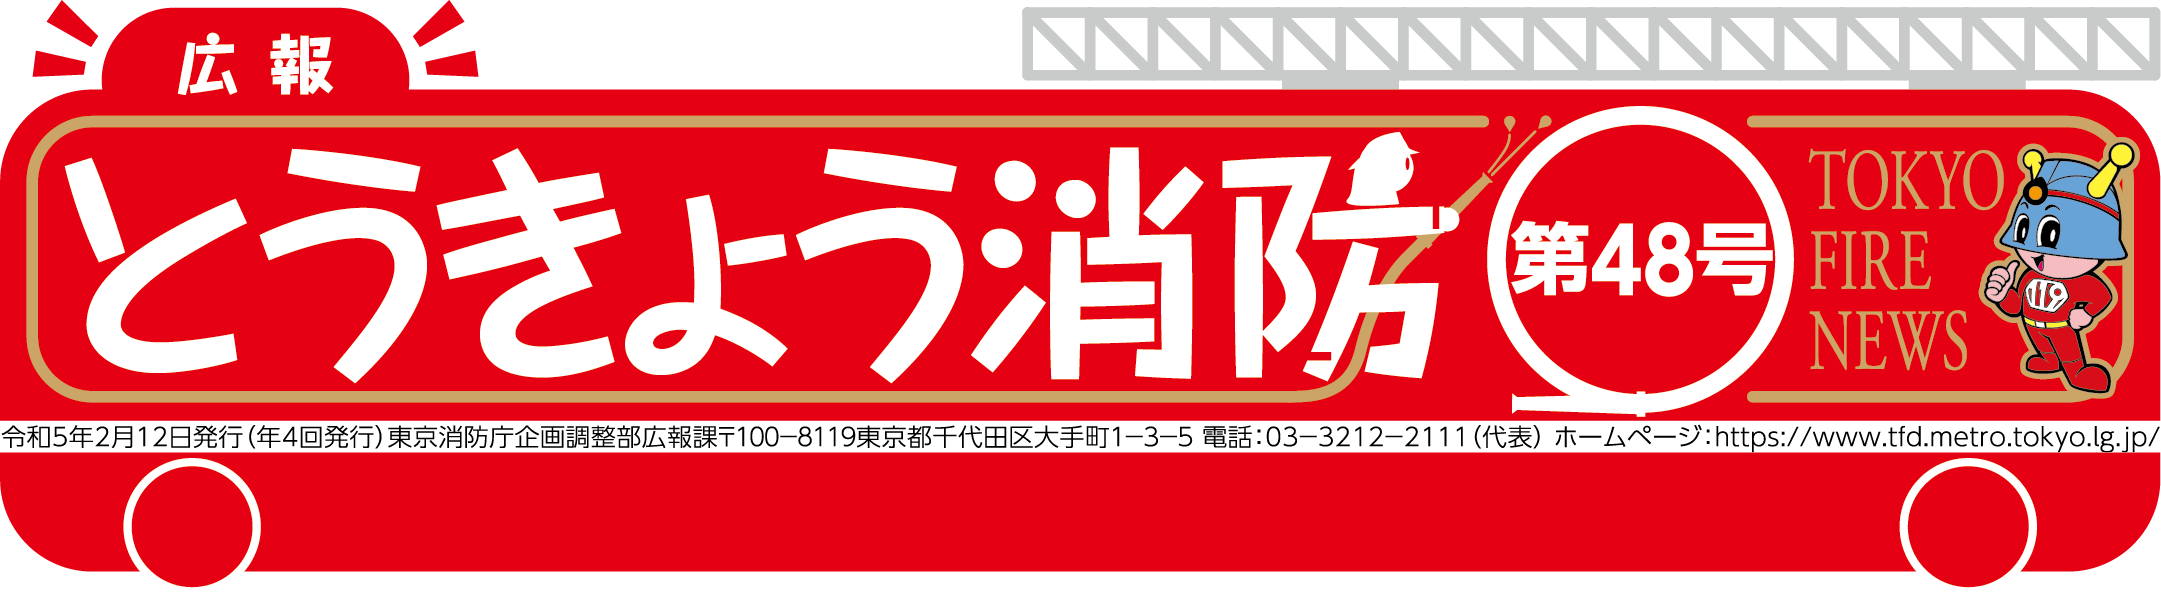 東京消防庁 広報とうきょう消防（第48号）